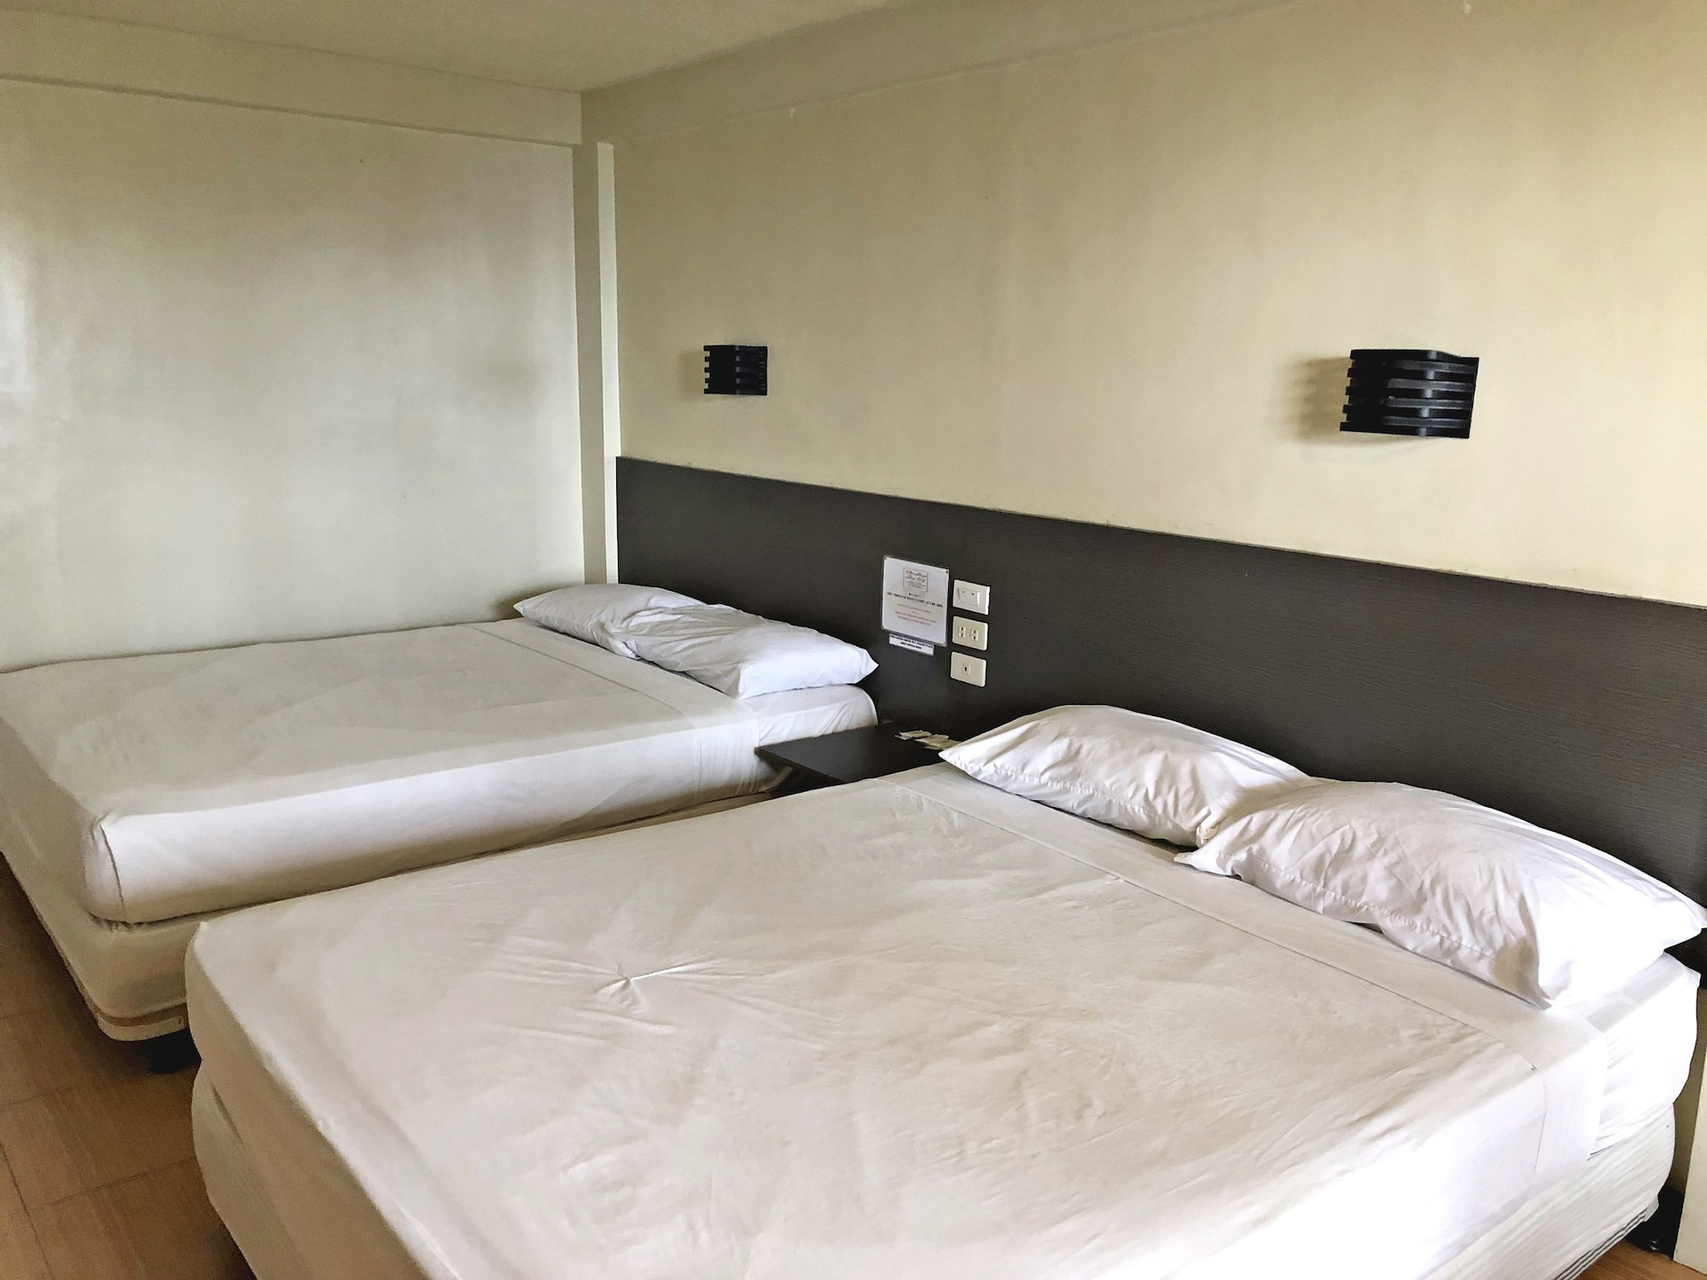 Room 1, Pura Vida Resort, Tagaytay City